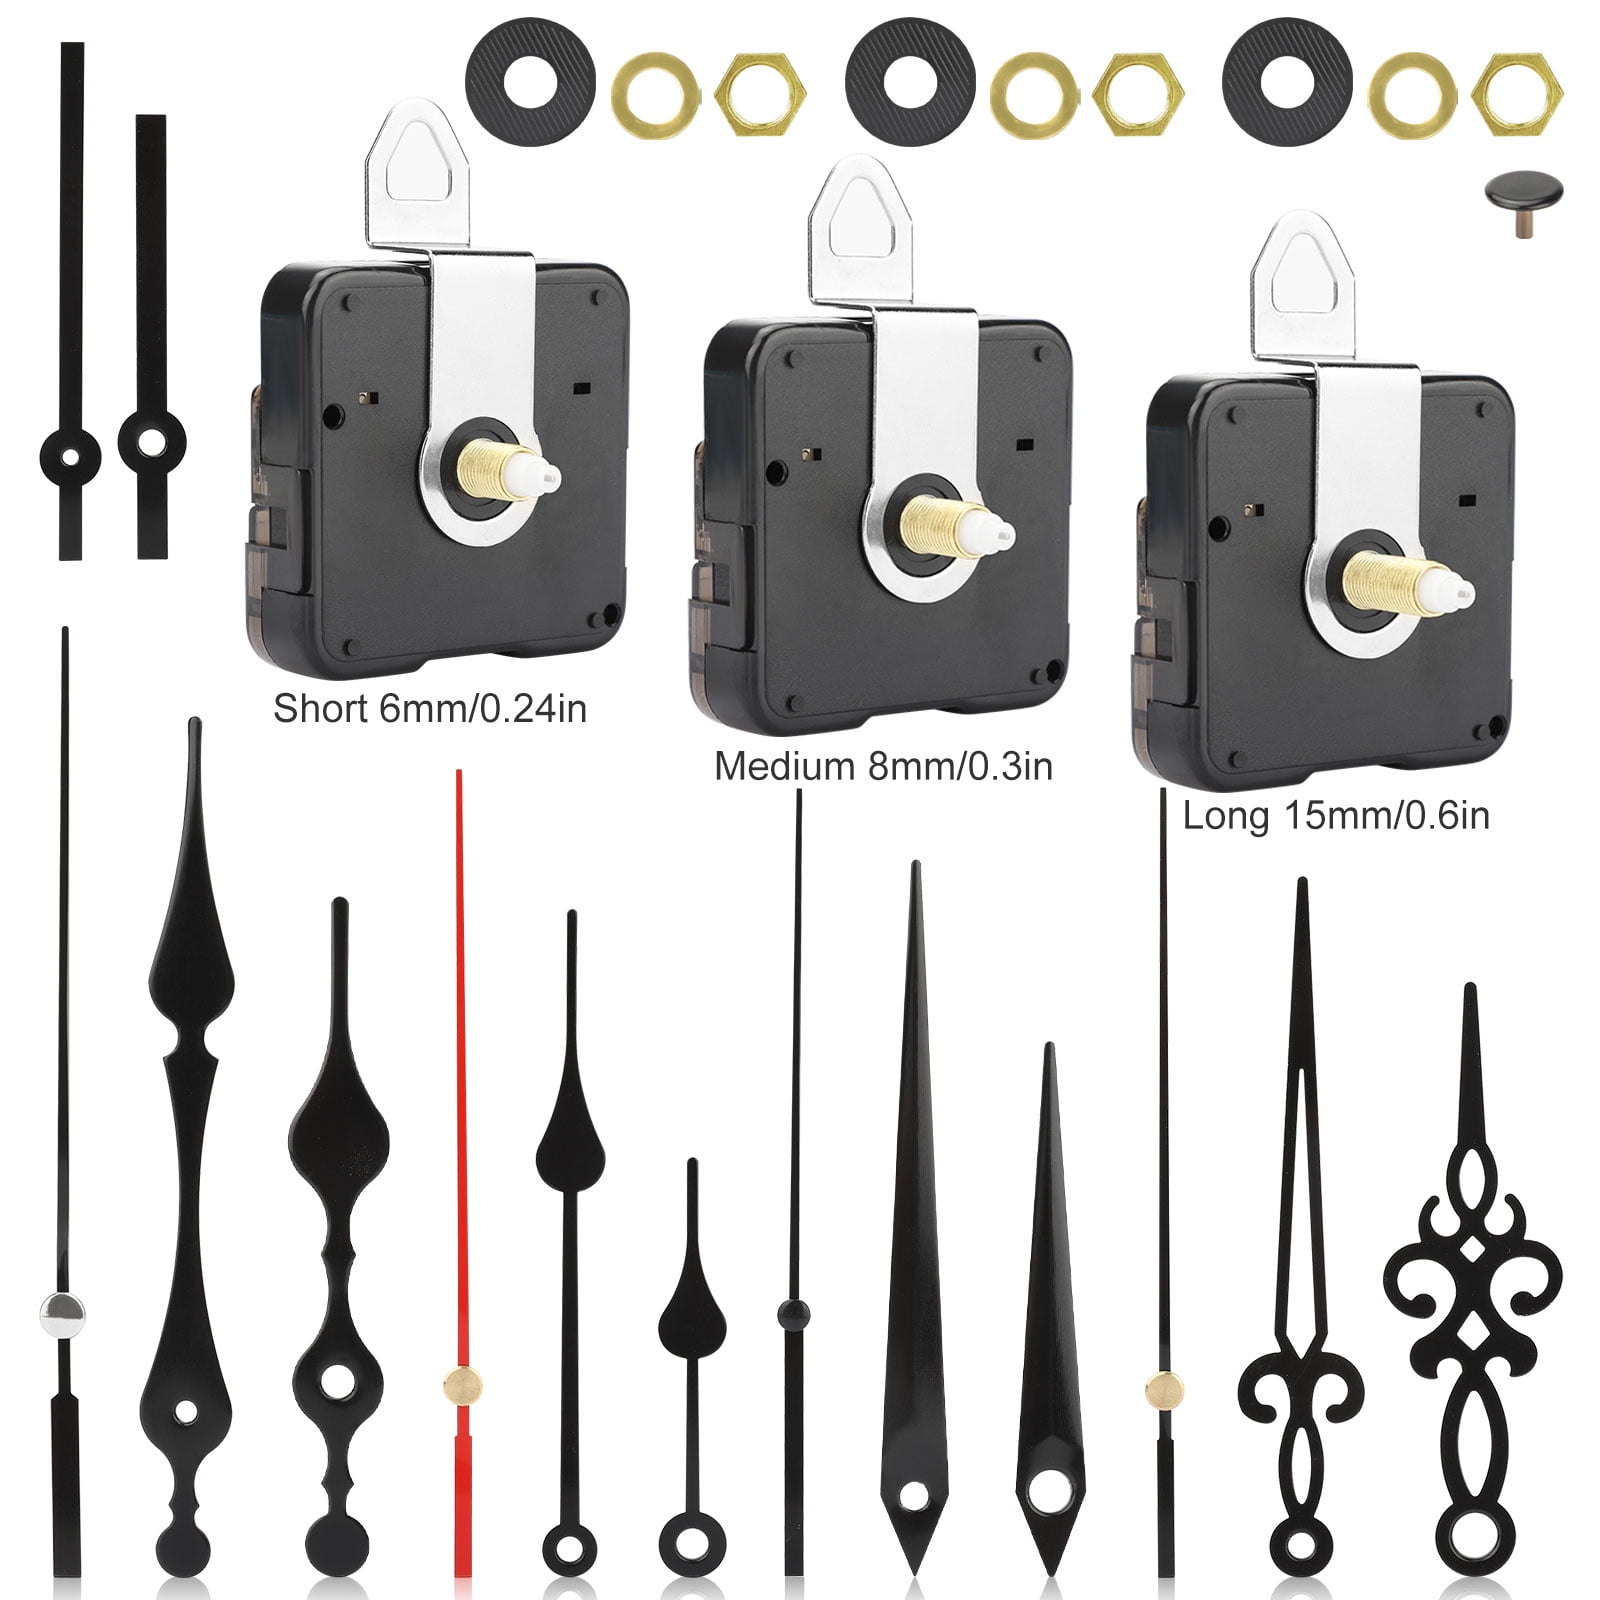 Black High Torque Long Shaft Clock Movement Mechanism With 12 Inch Spade Hands 